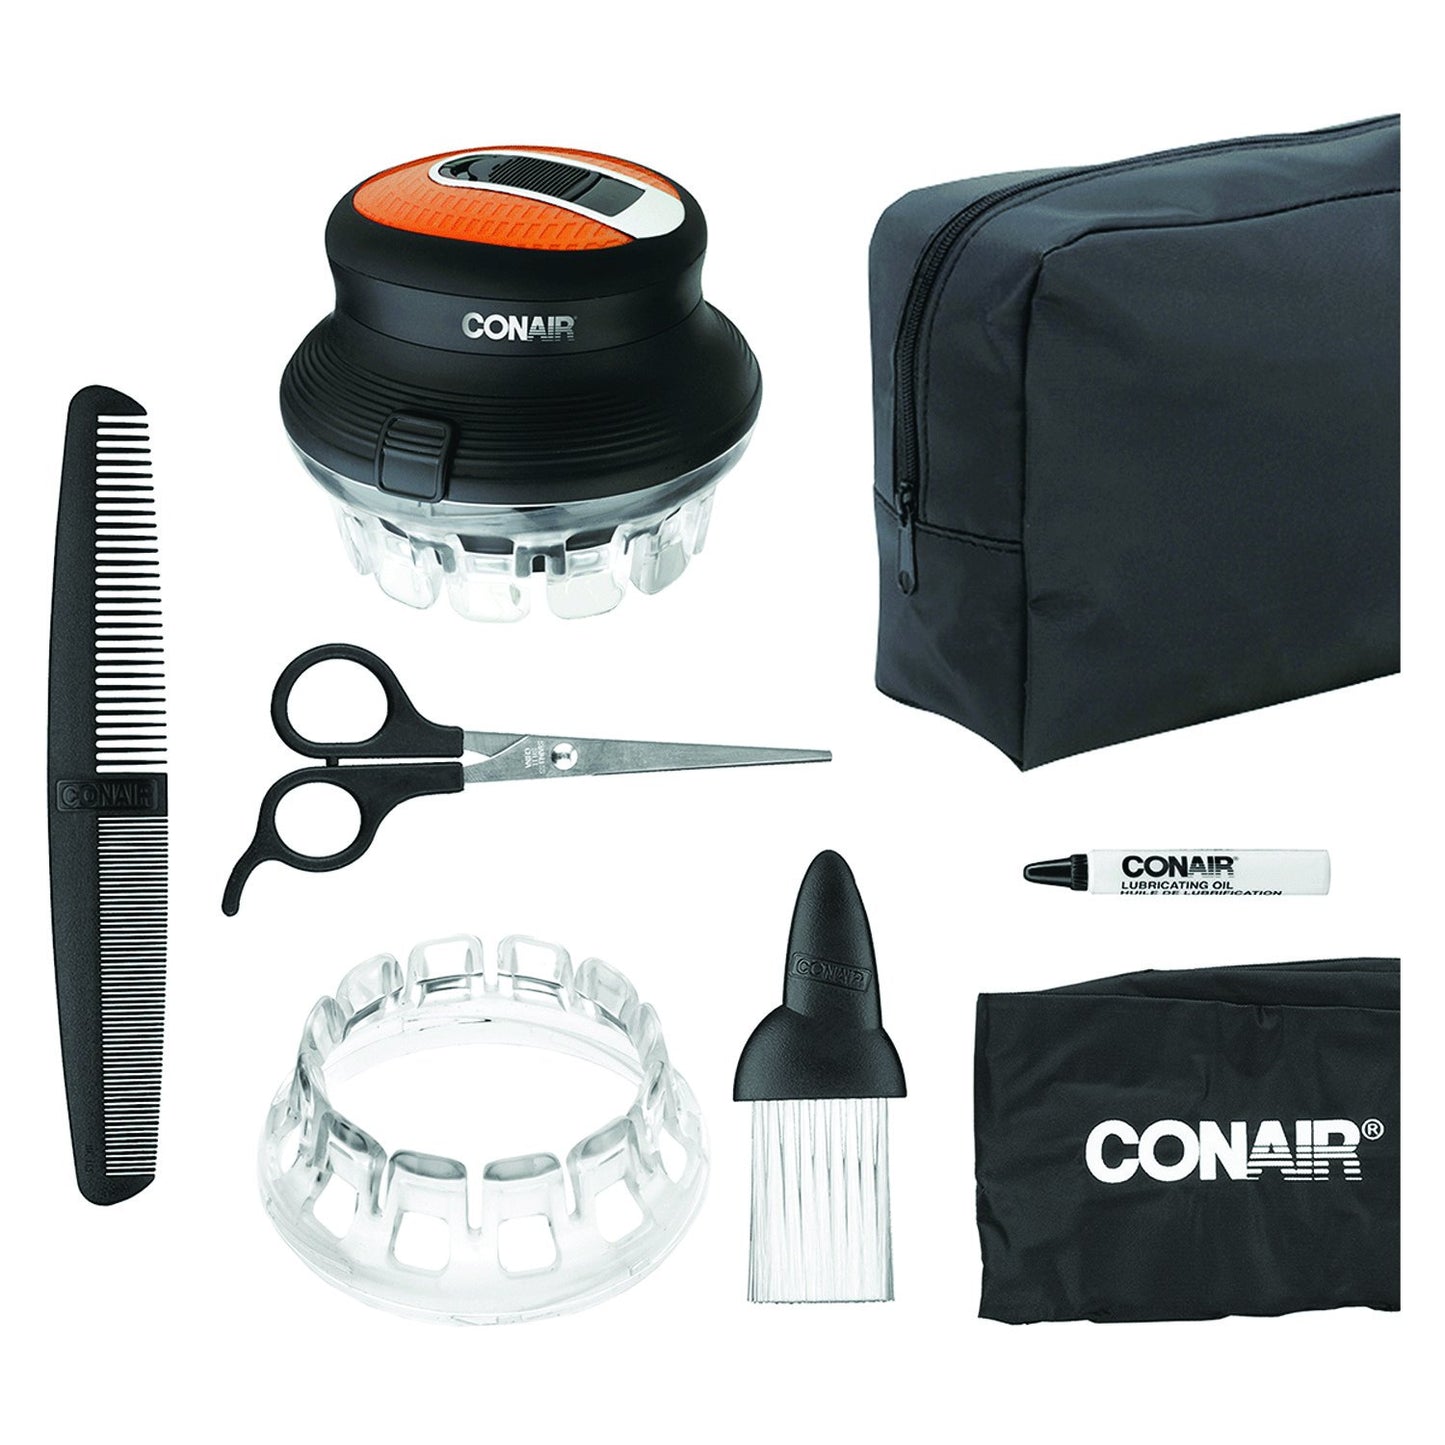 CONAIR HC900RN Even Cut™ Cord/Cordless Circular Haircut Kit